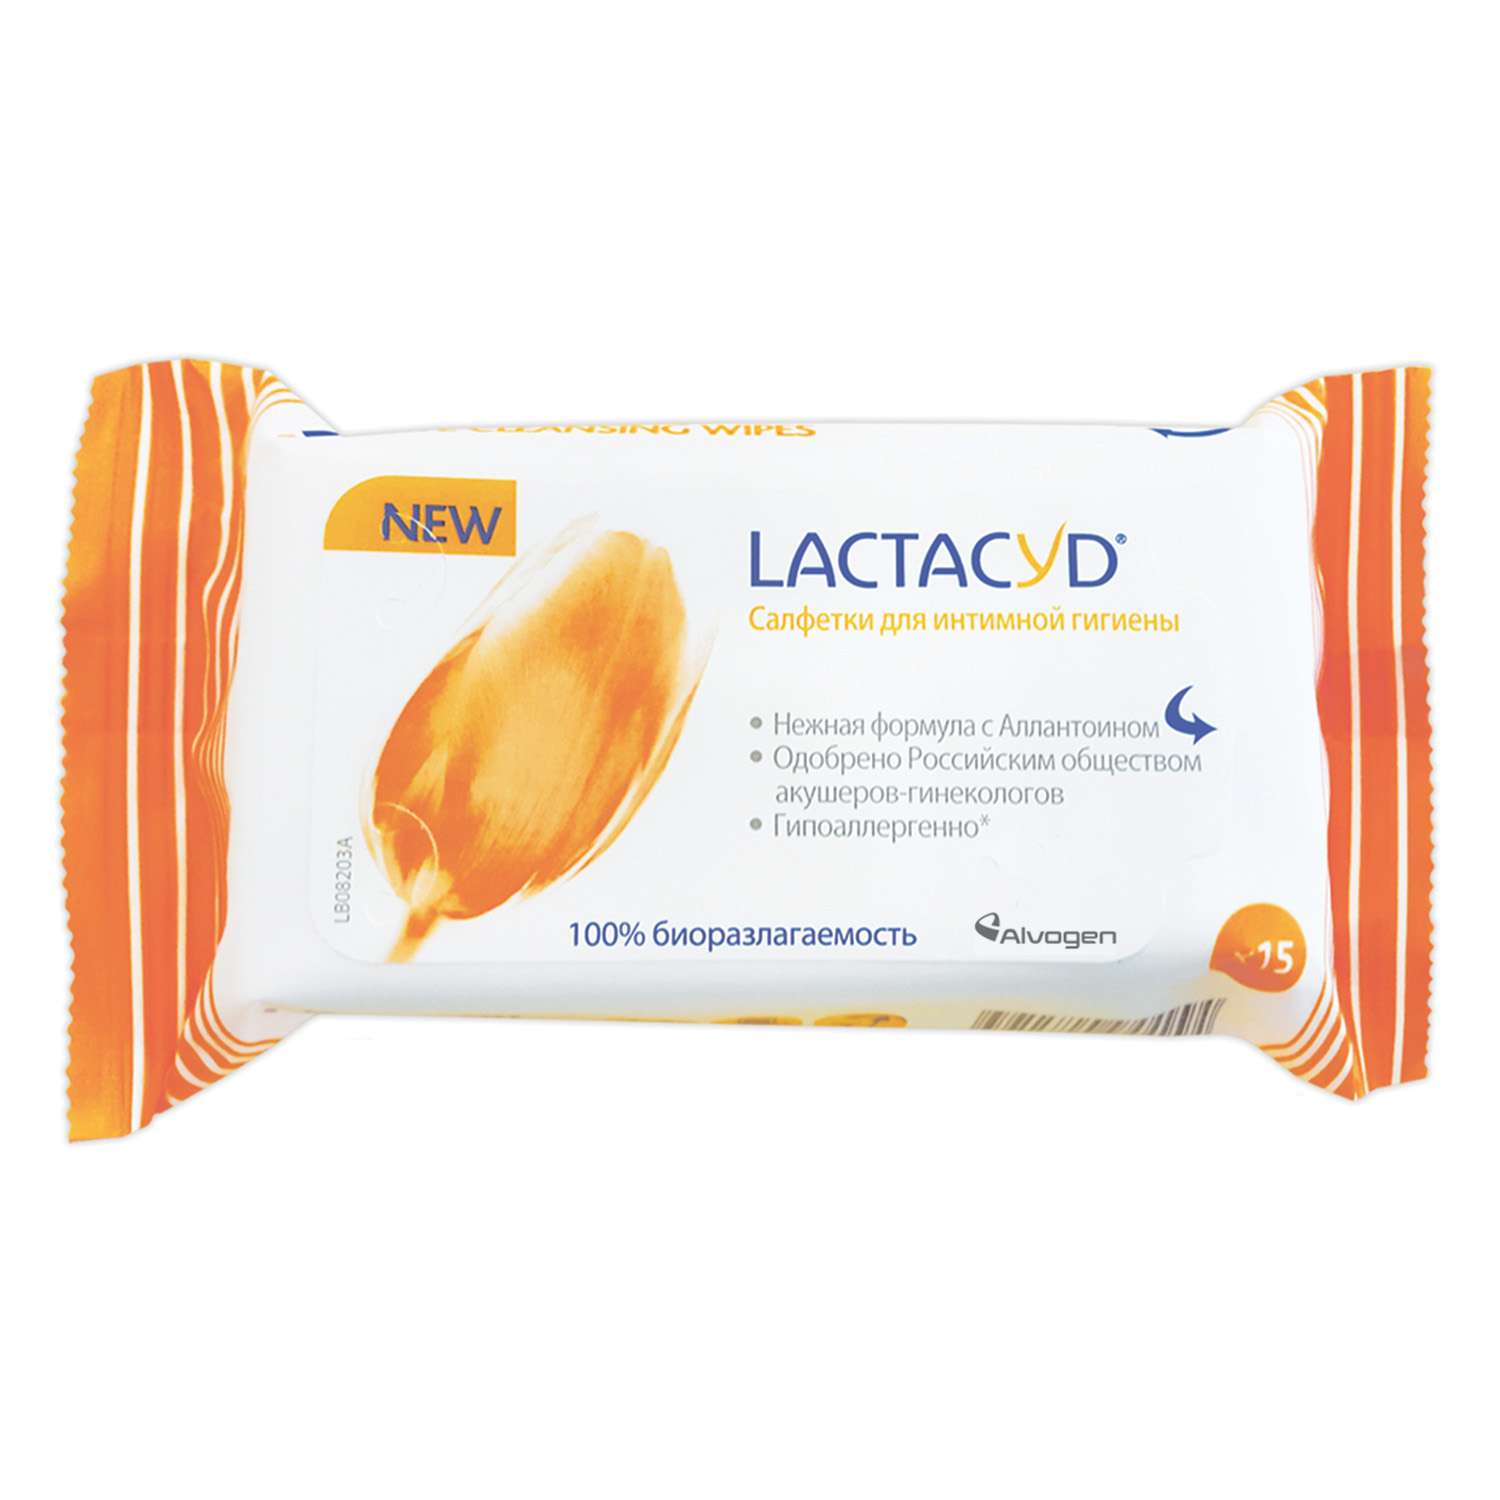 Салфетки для интимной гигиены Lactacyd 15 шт - фото 1